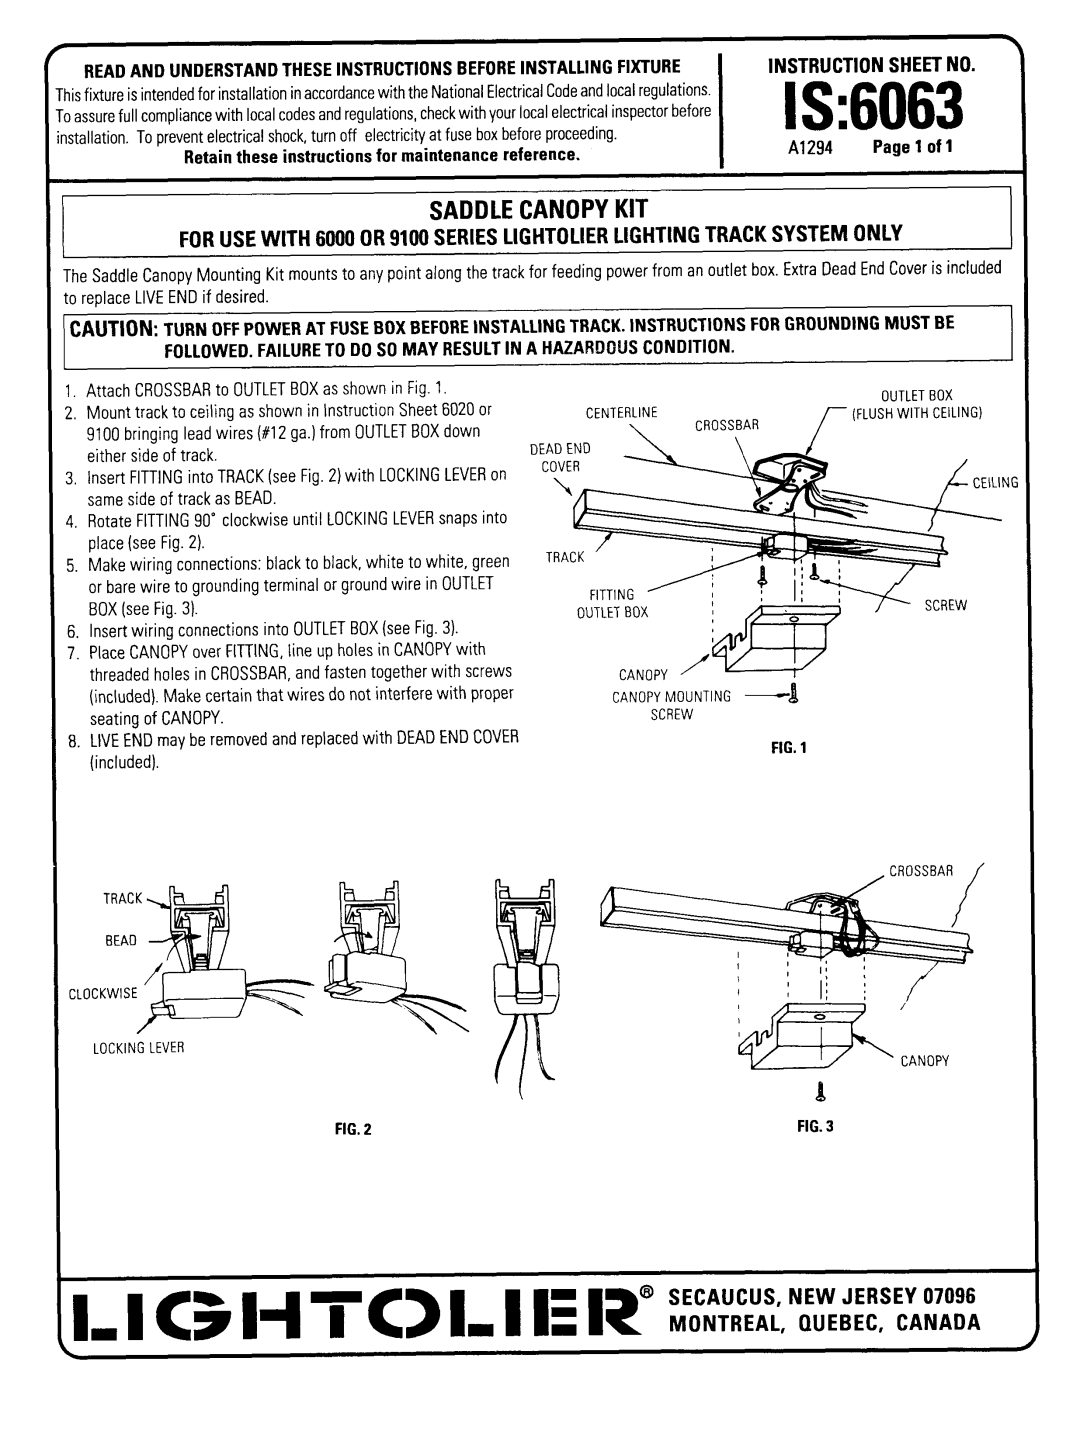 Lightolier 6063 instruction sheet I C H TC L I E 1? iN = f, Is, Saddle Canopy Kit, Instructionsheet No 